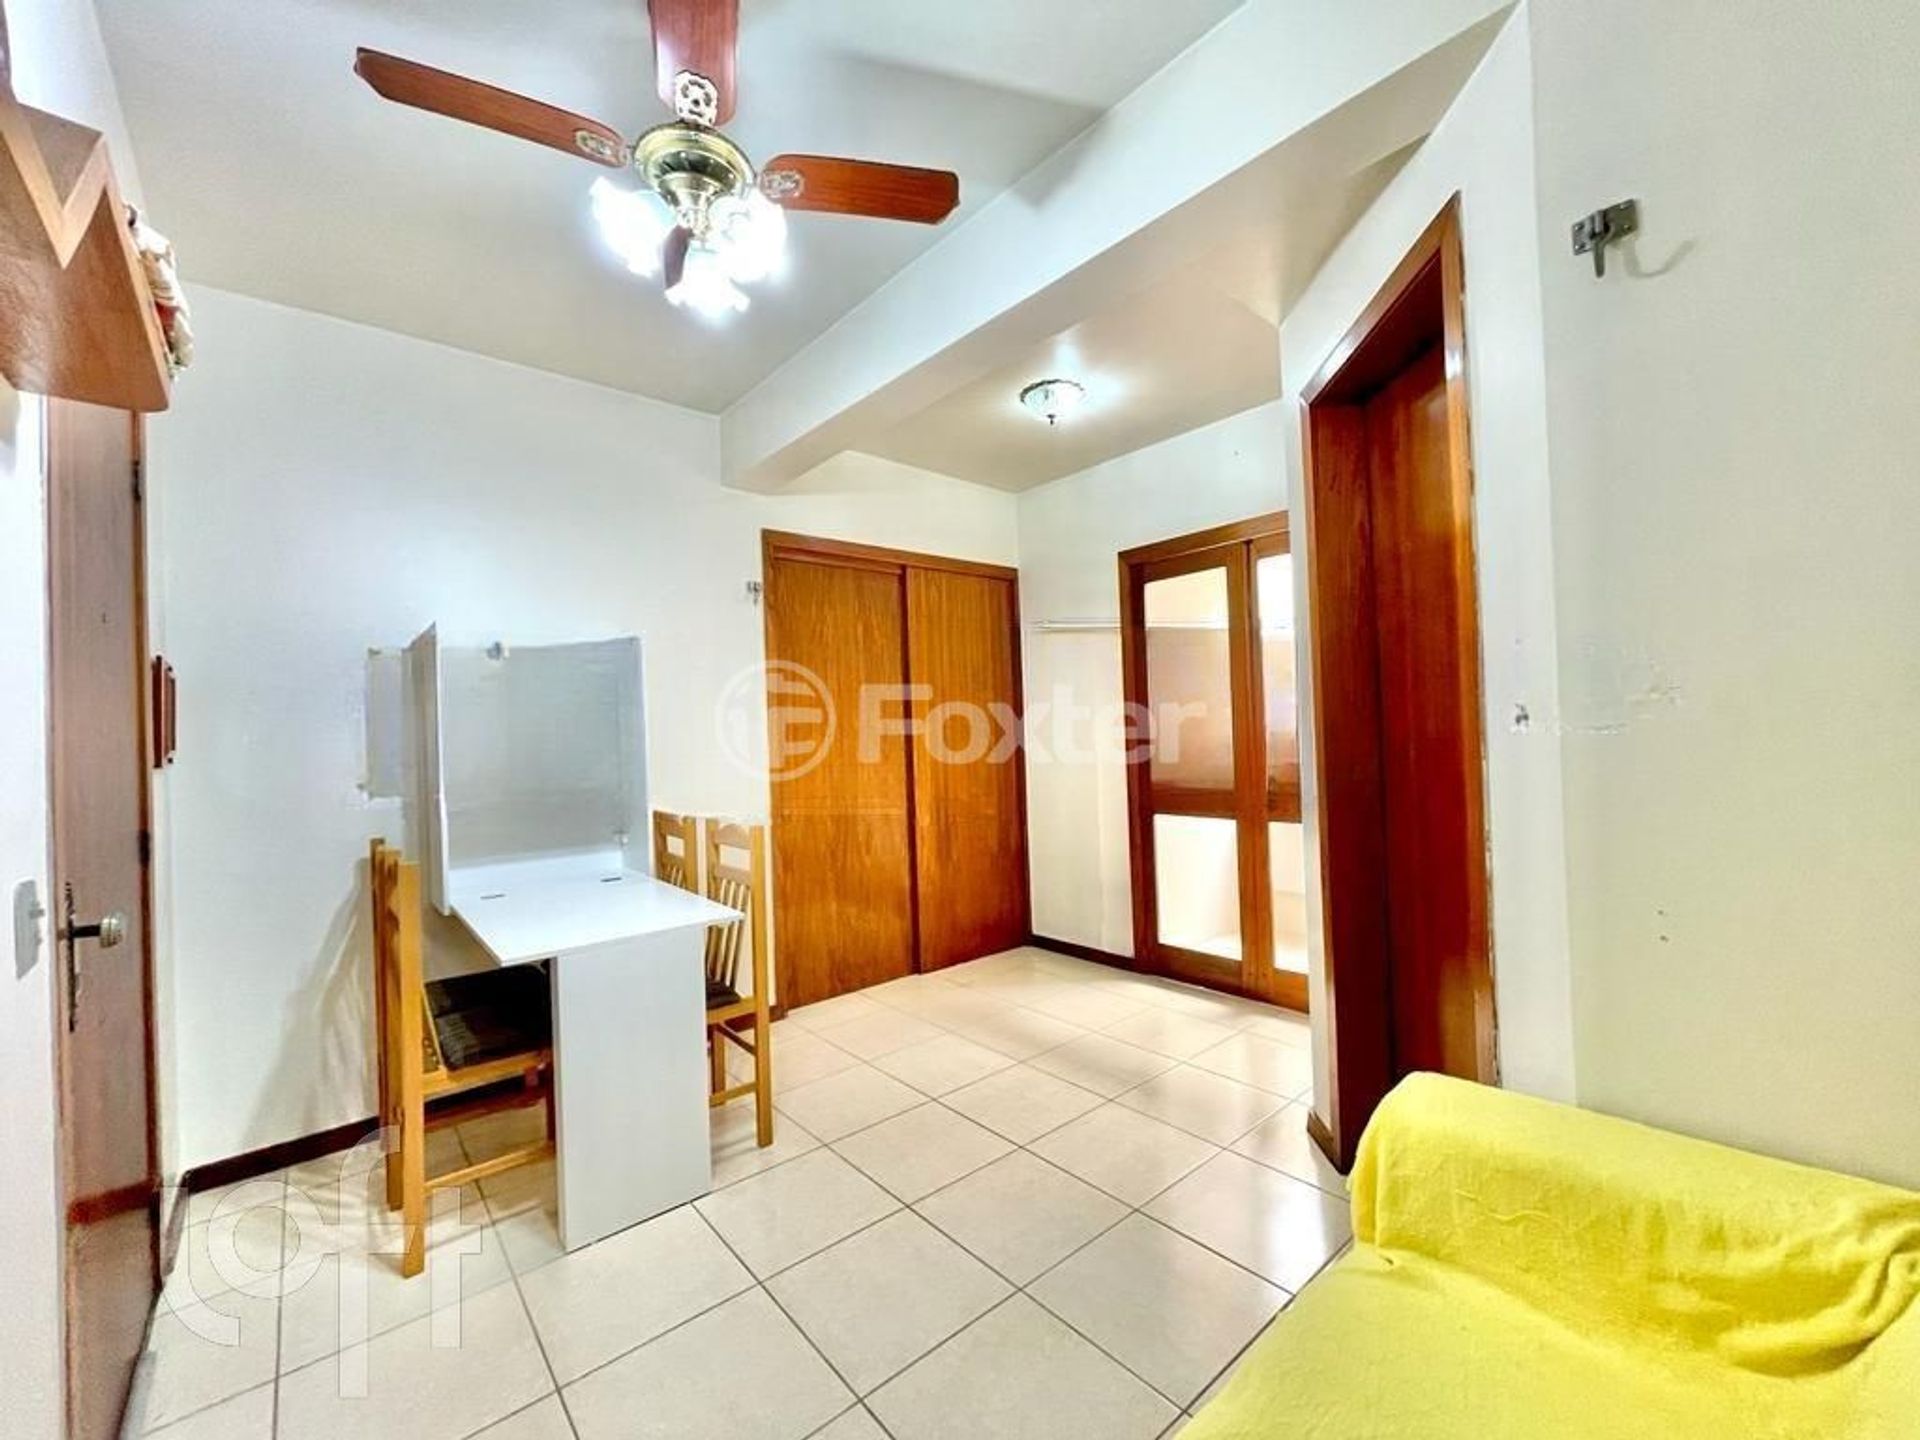 Apartamento 1 dorm à venda Rua Venancio Aires, Zona Nova - Capão da Canoa